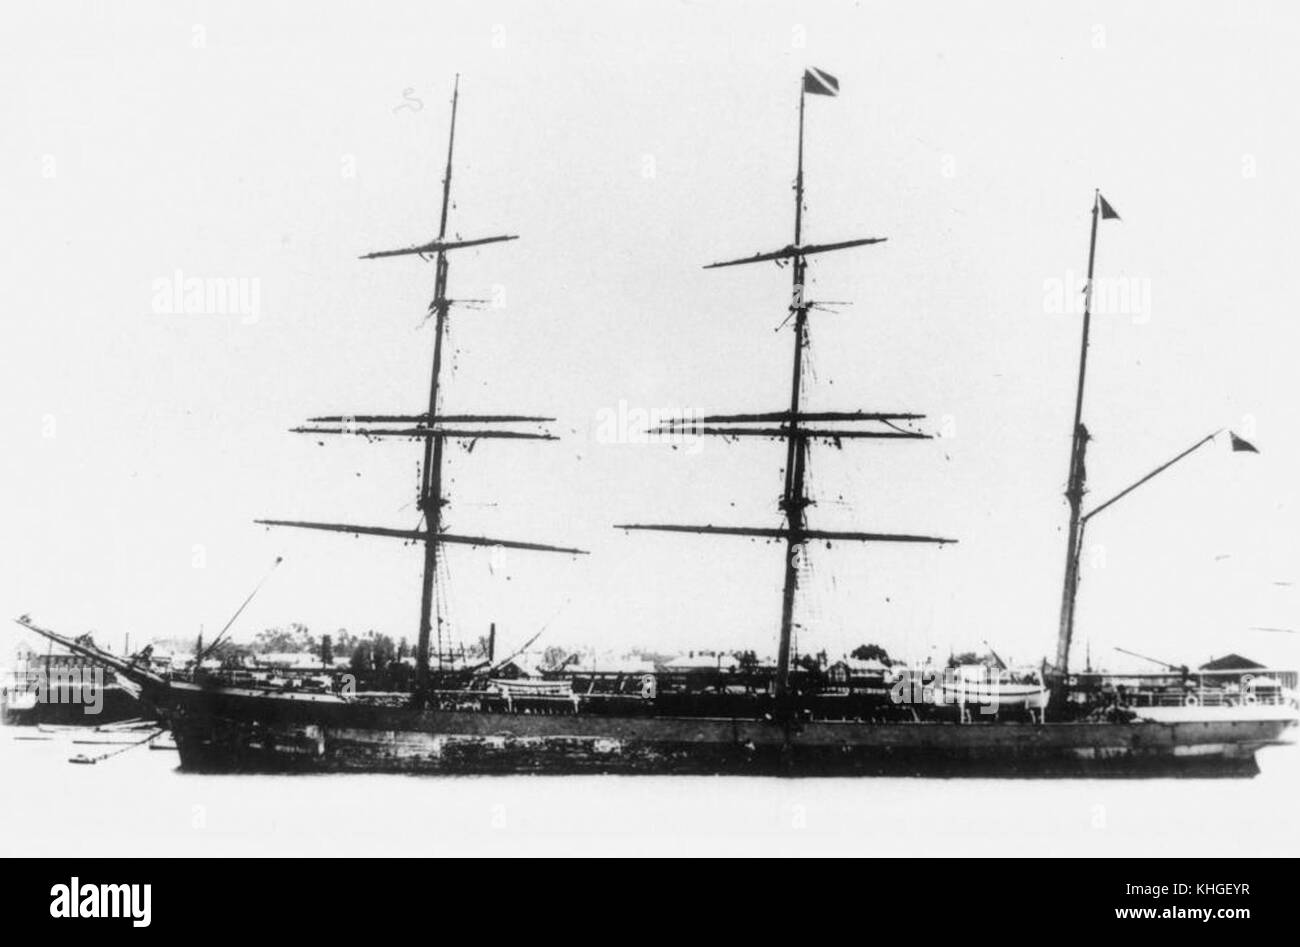 1 97512 Sardhana (ship) Stock Photo